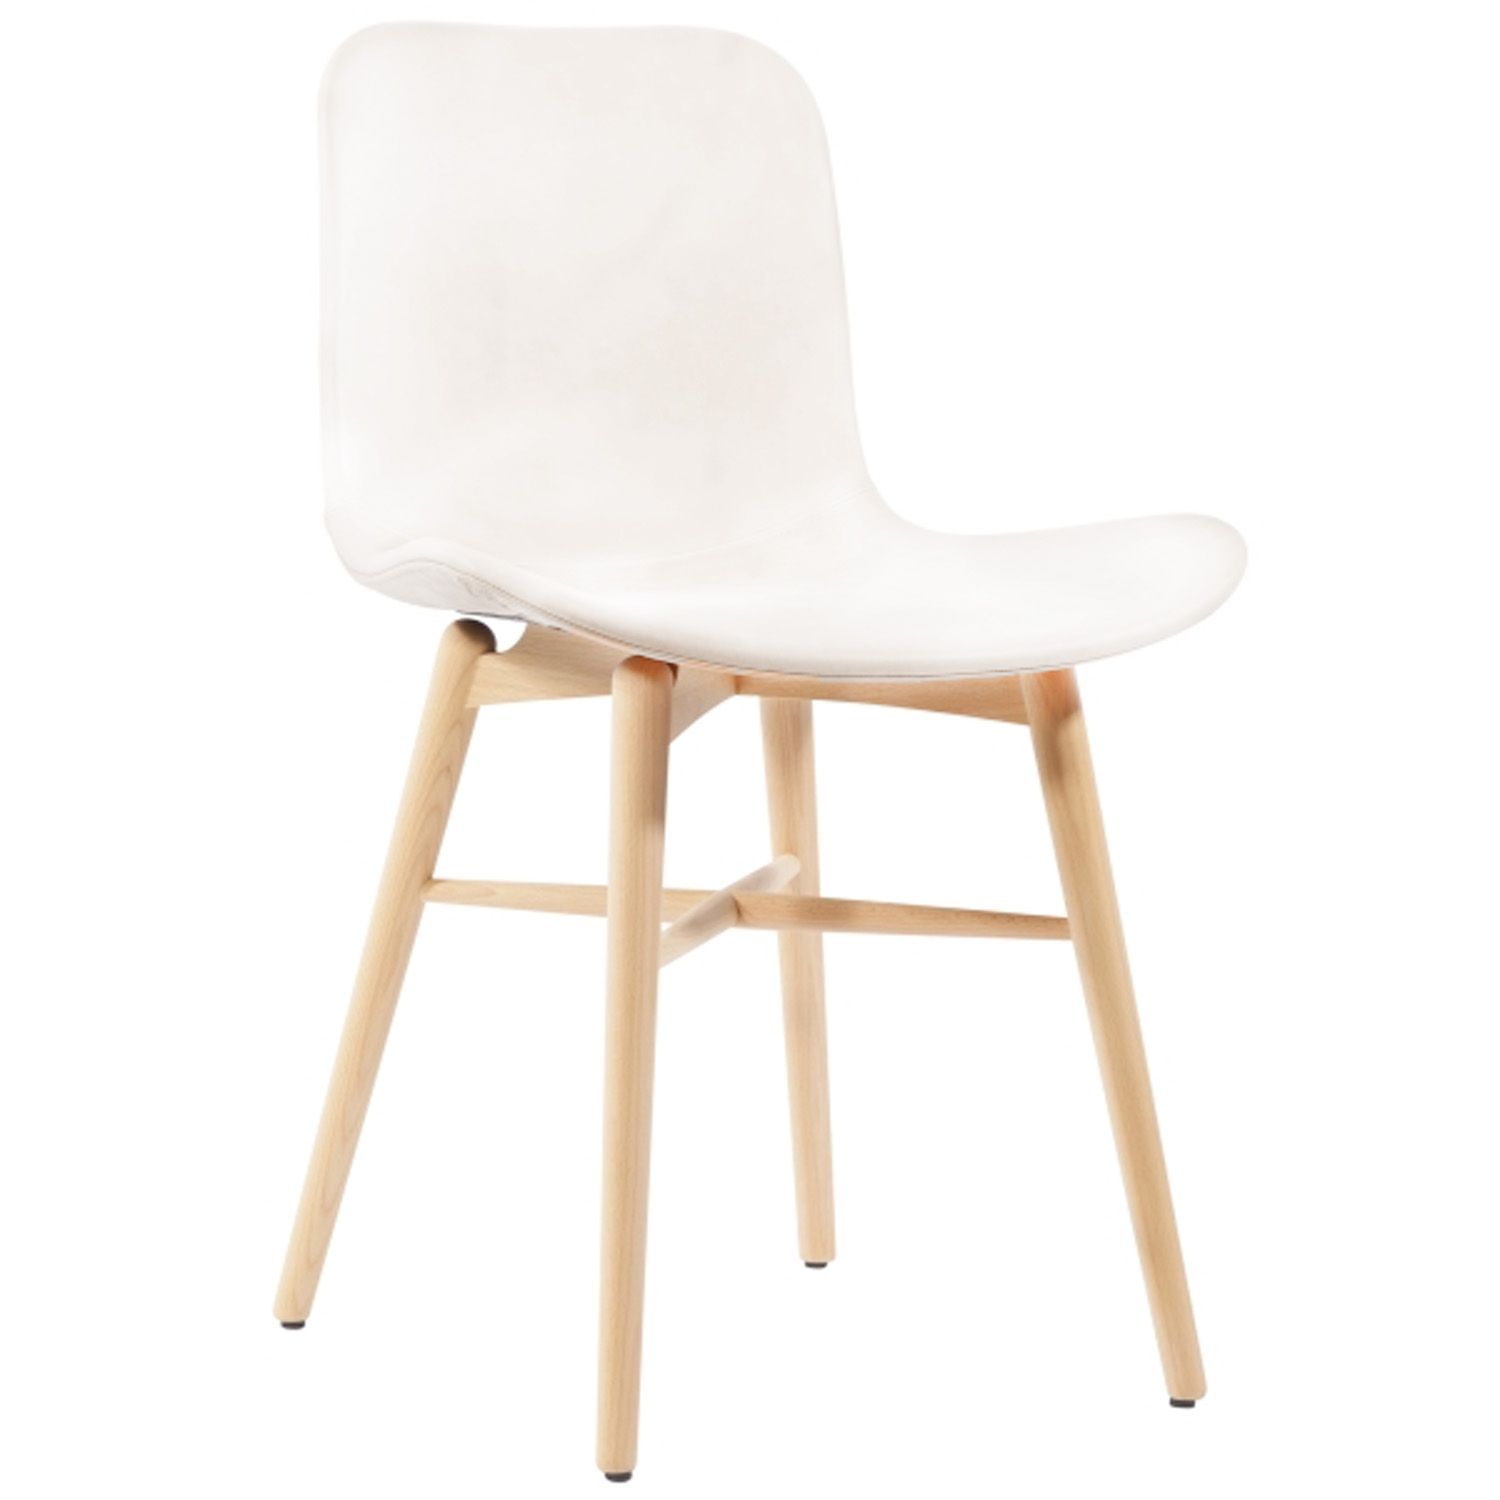 Výprodej Norr 11 designové židle Langue Original Dining Chair (dub, krémová kůže) - DESIGNPROPAGANDA